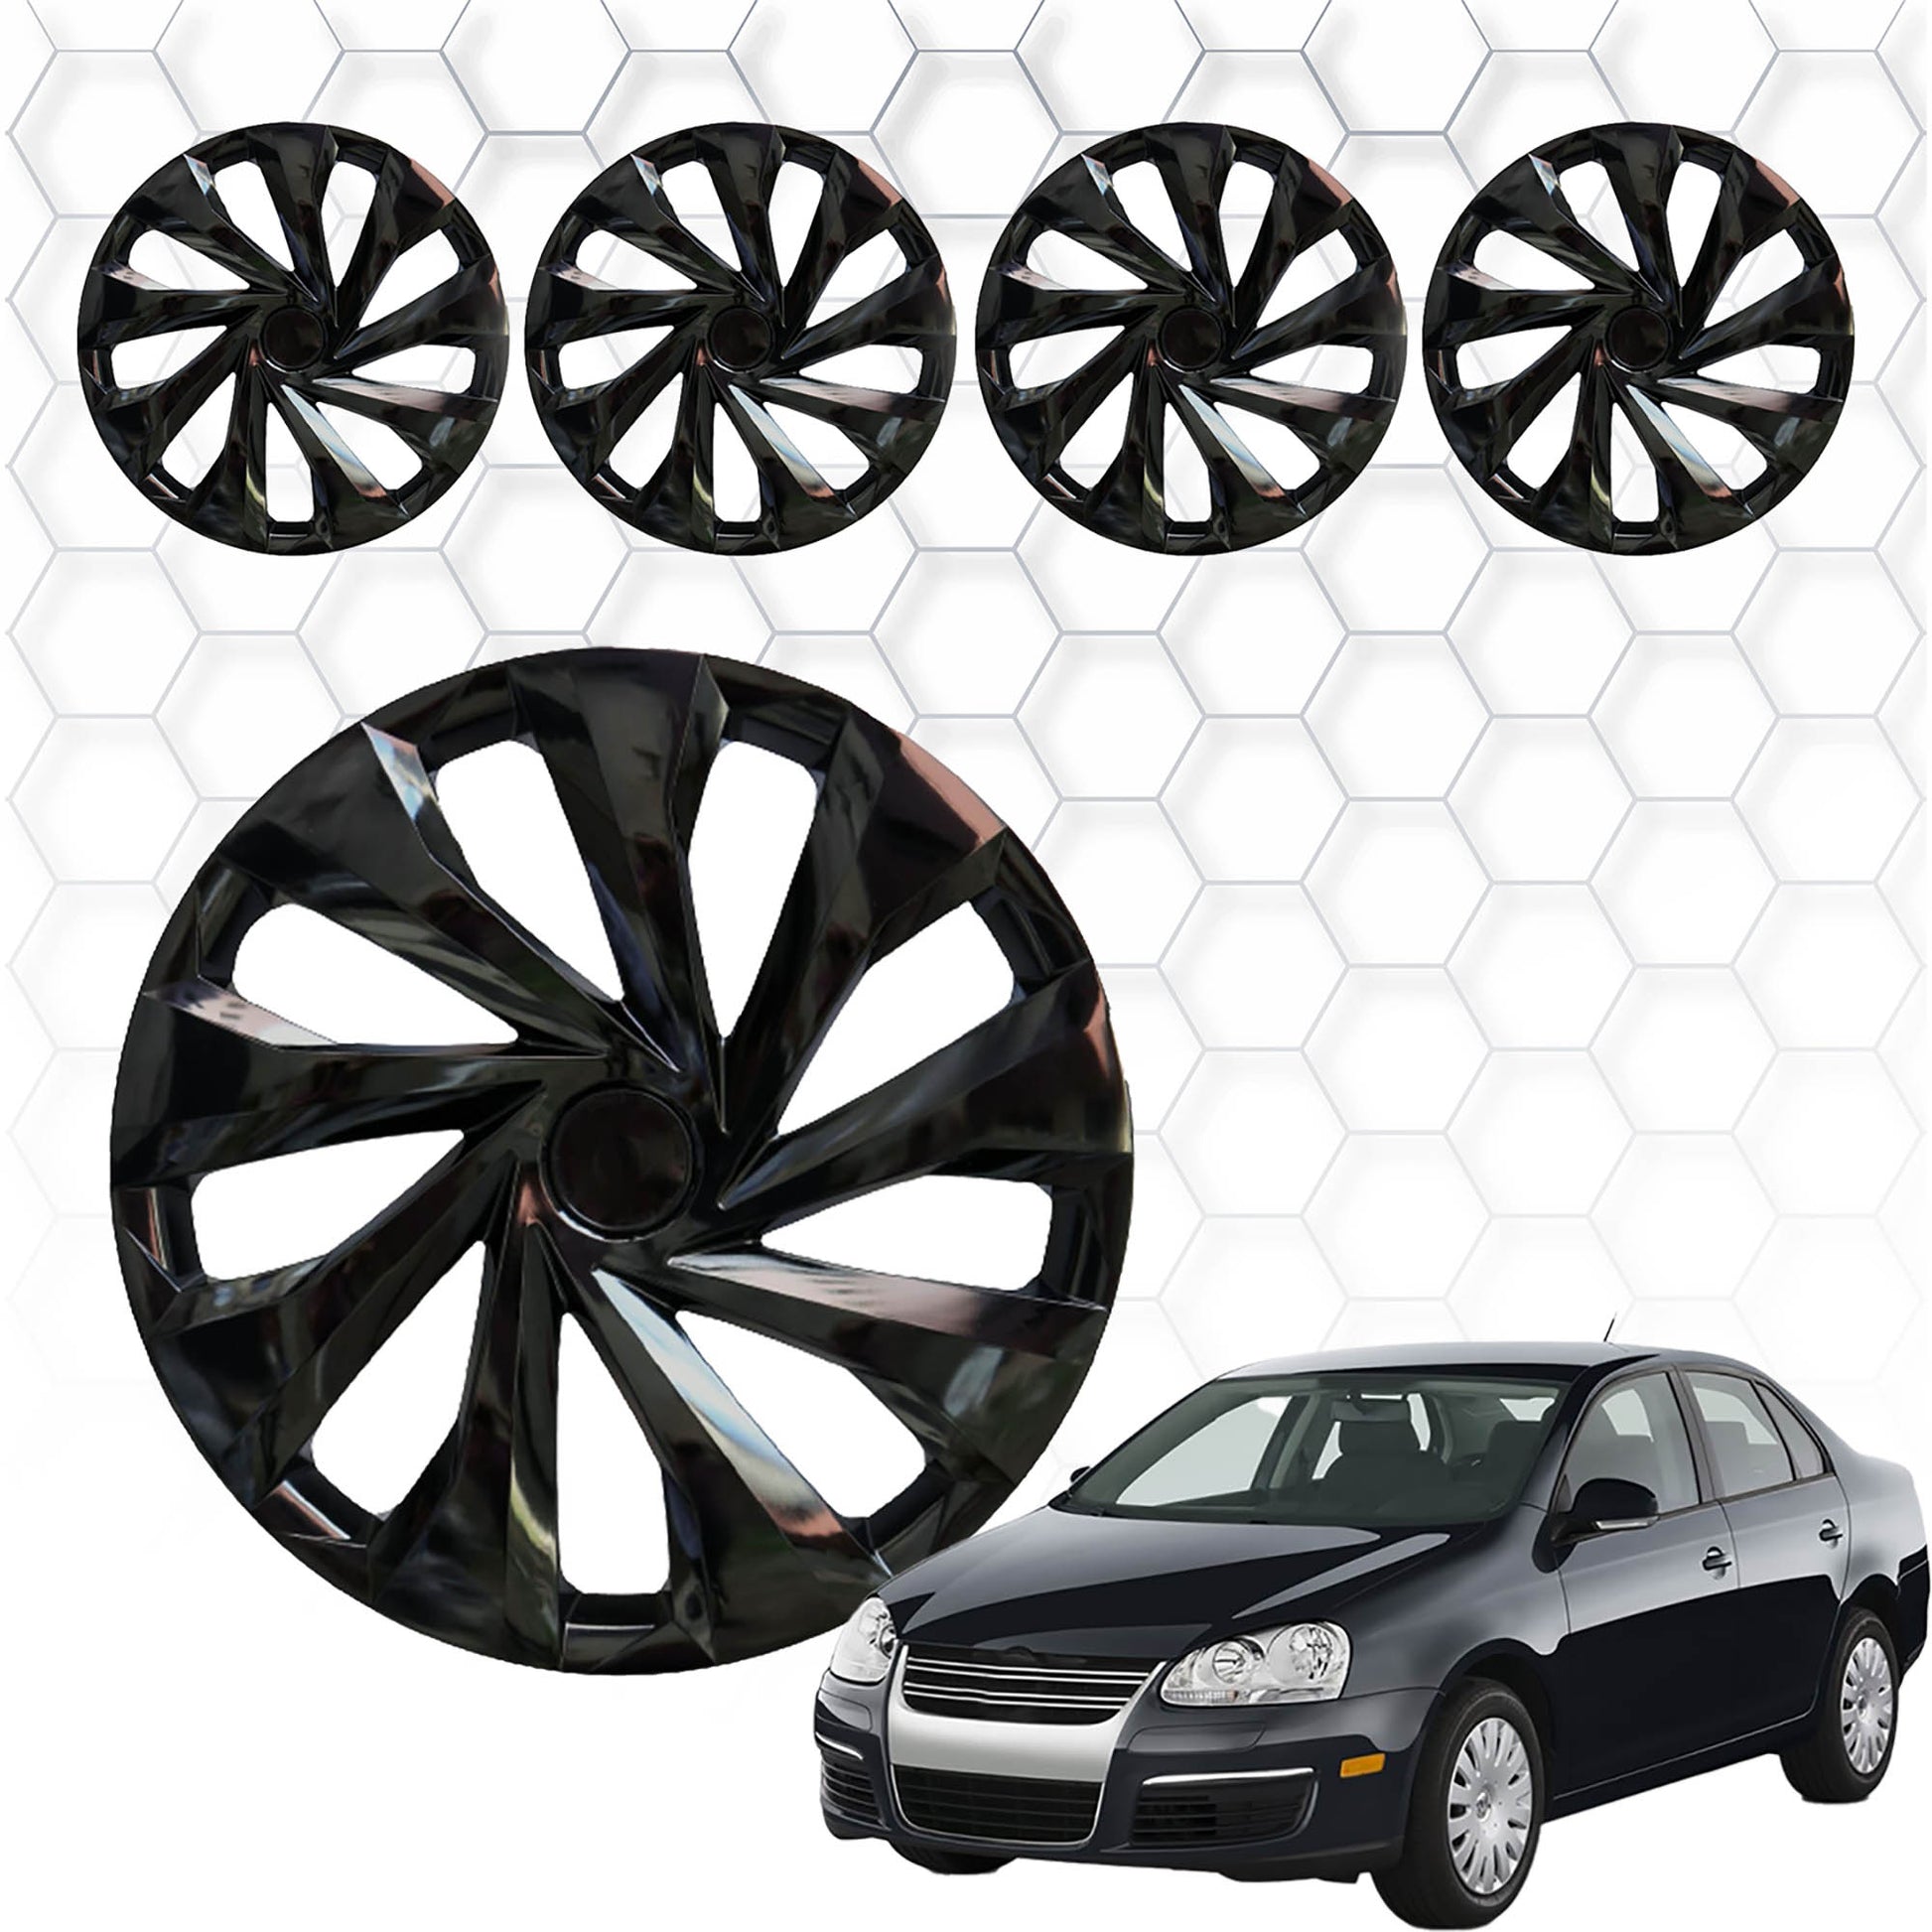 Volkswagen Jetta Jant Kapağı Aksesuarları Detaylı Resimleri, Kampanya bilgileri ve fiyatı - 1